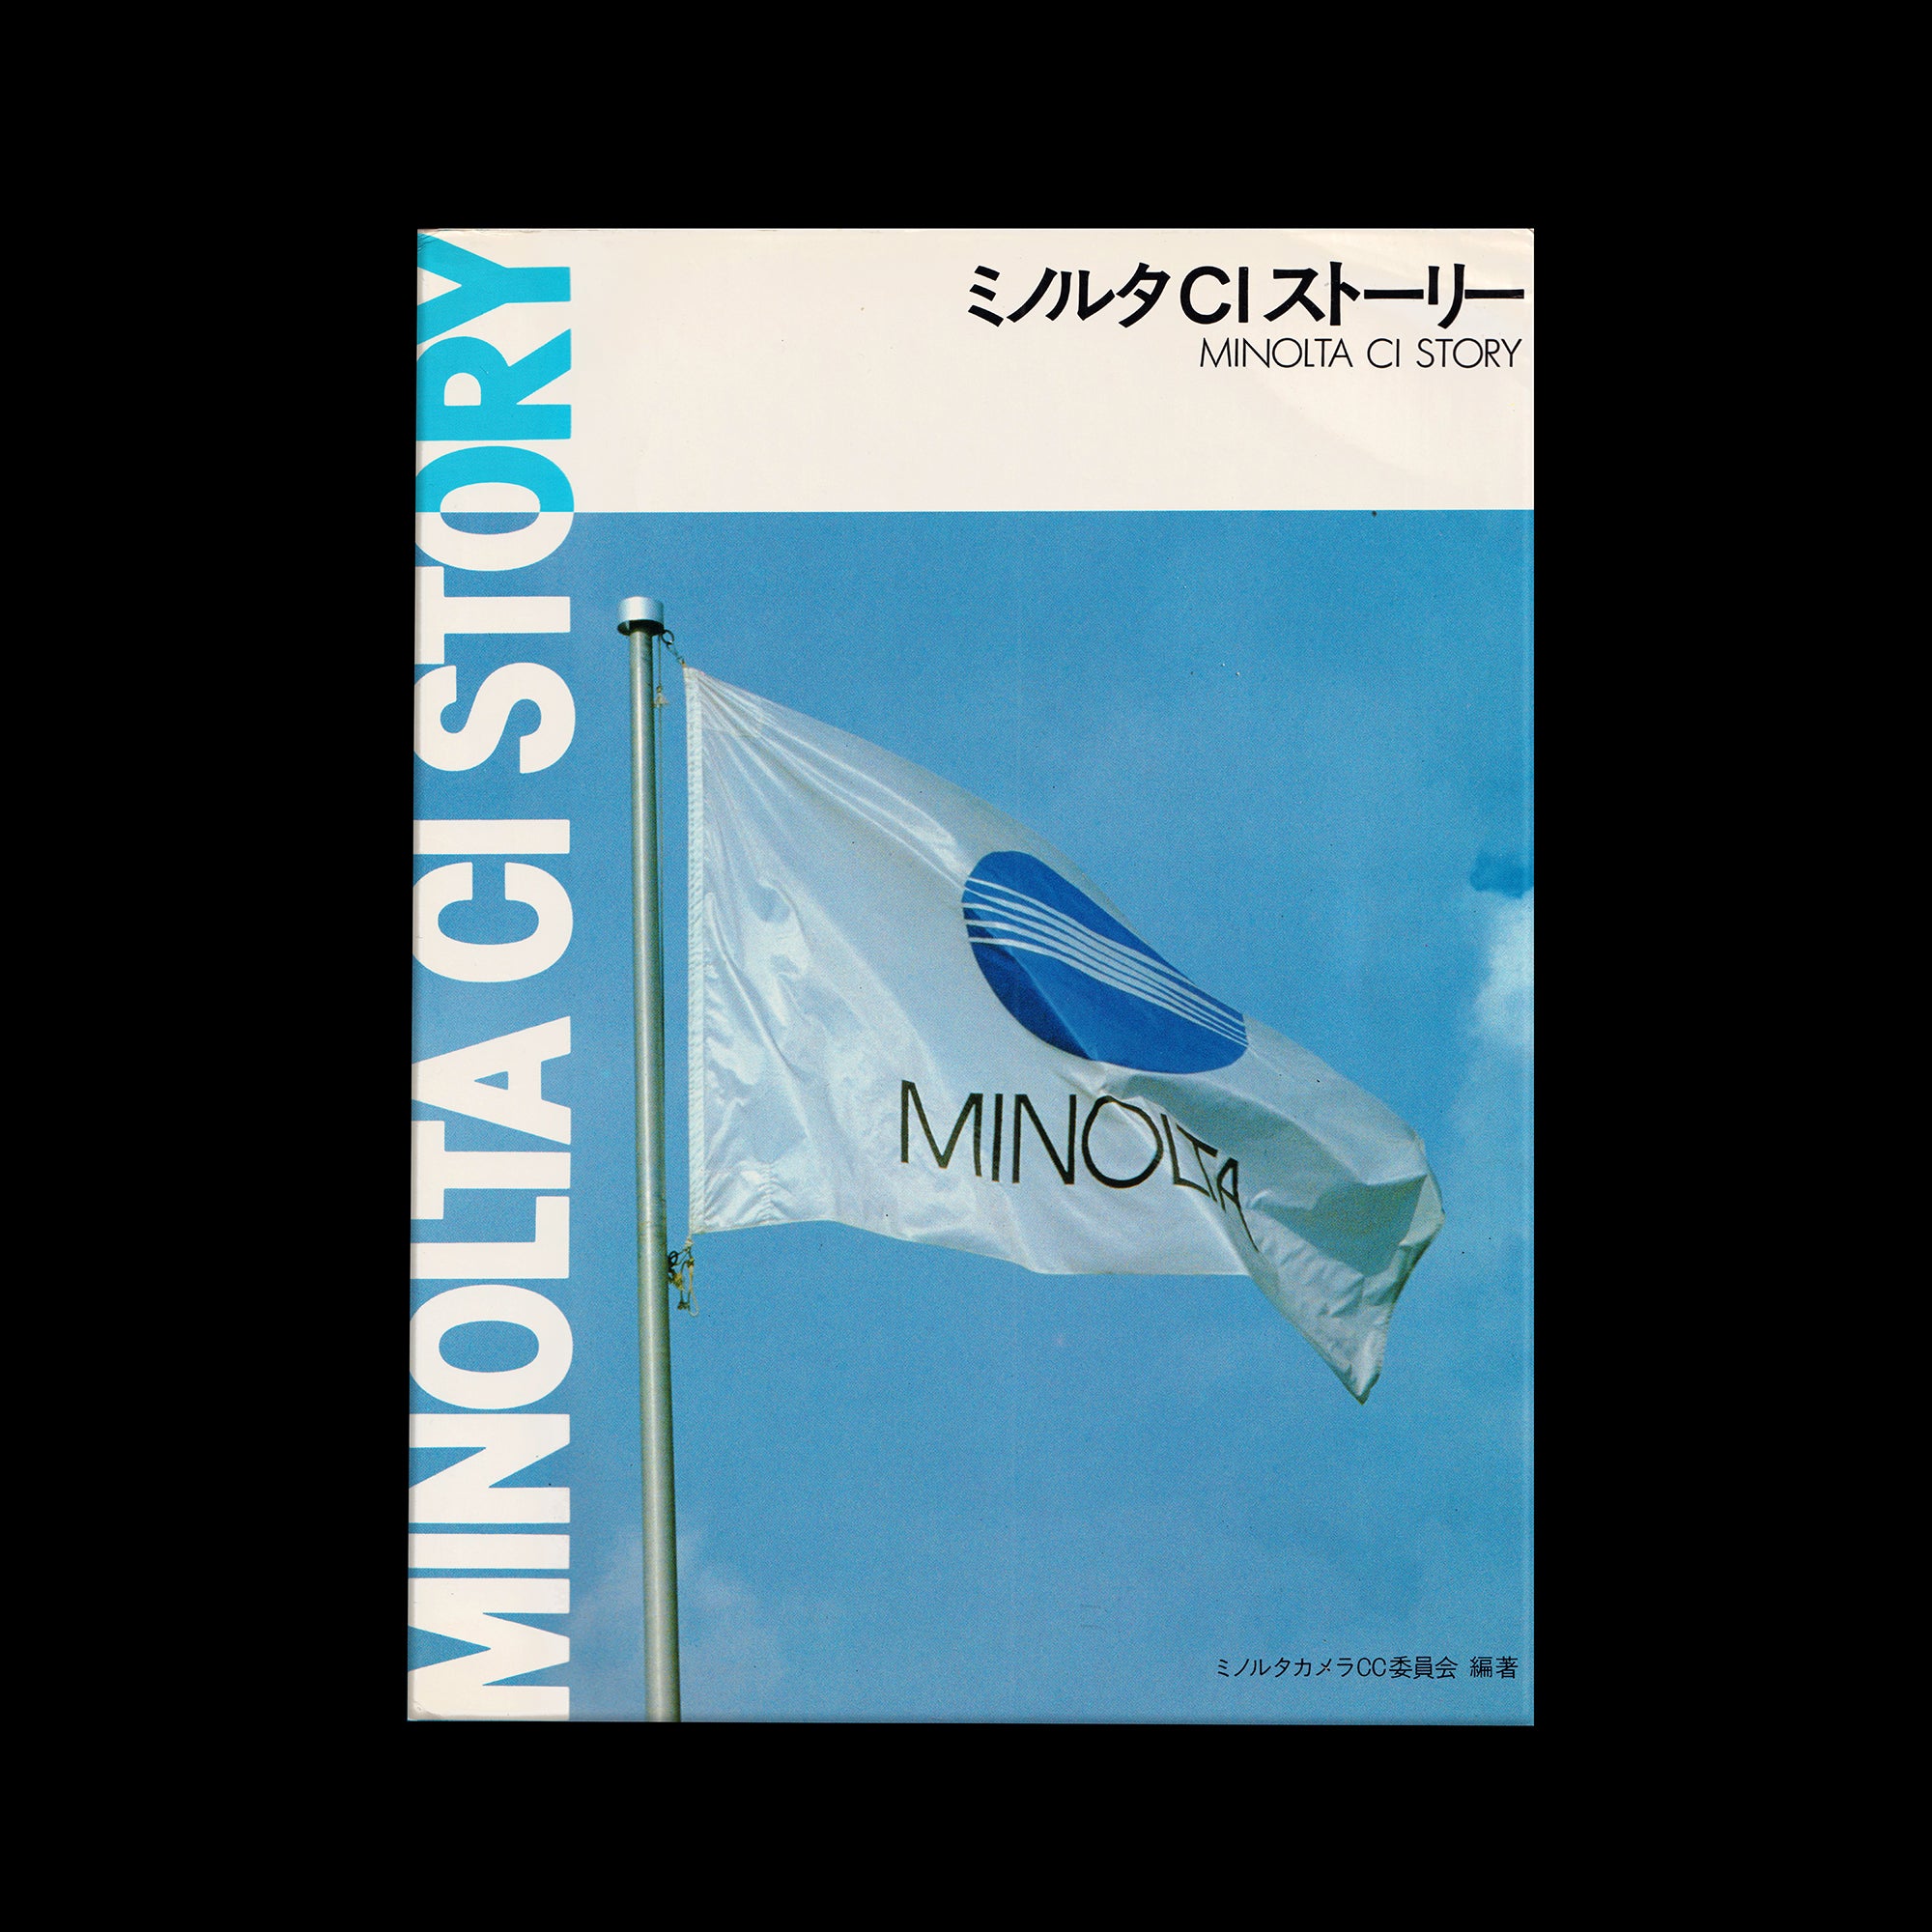 Minolta CI Story, 1984